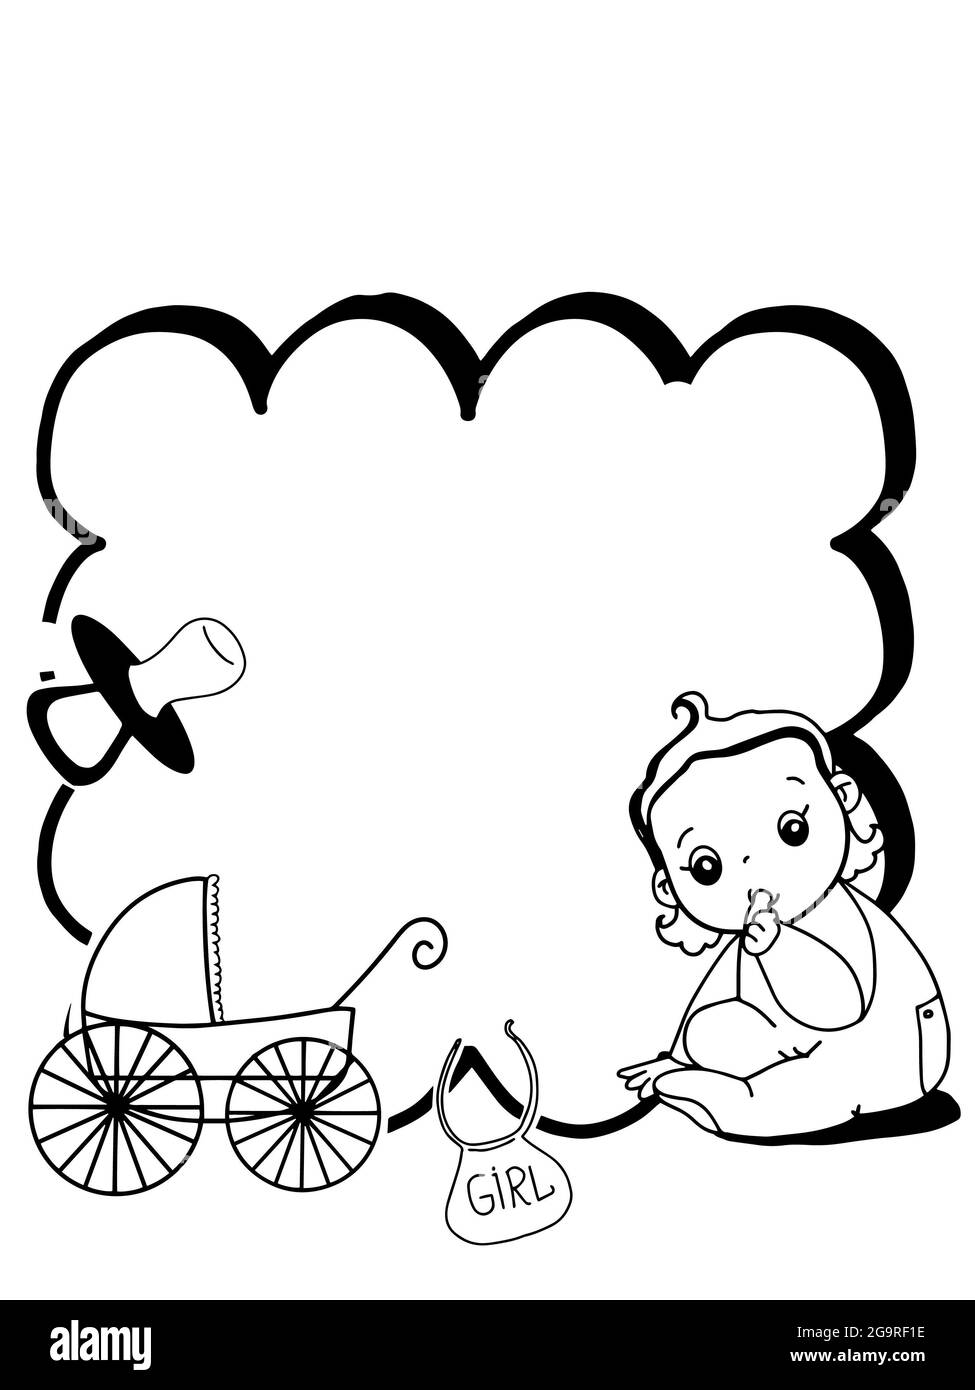 Bienvenida tarjeta de anuncio de bebé Imágenes de stock en blanco y negro -  Alamy